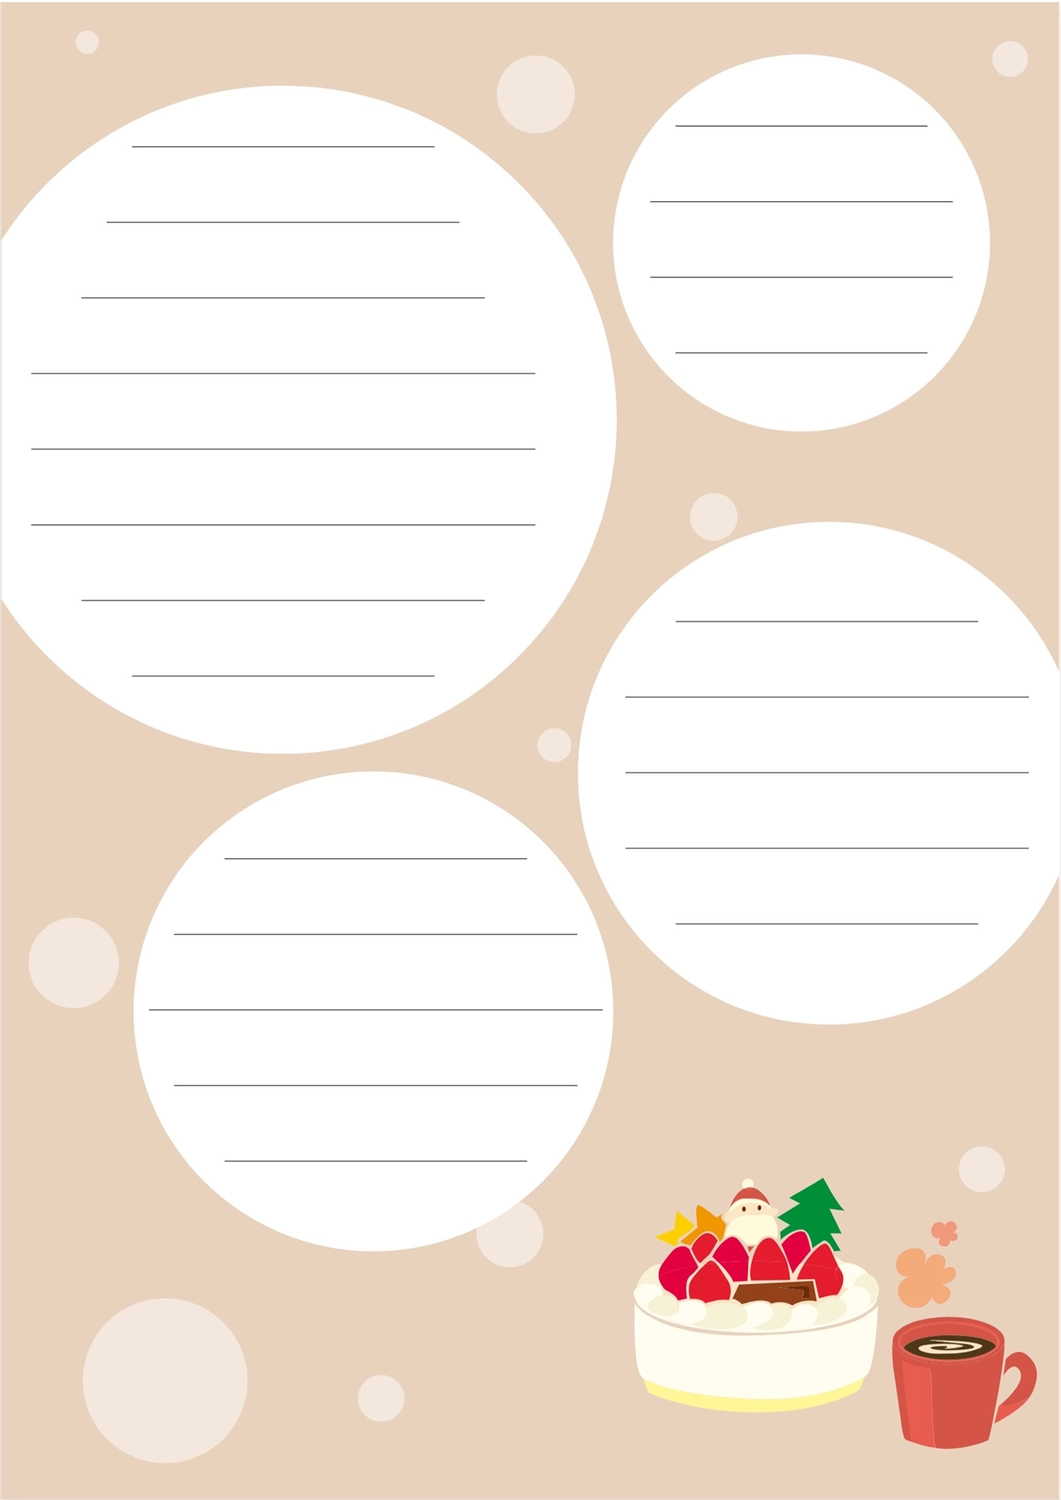 便箋（クリスマスケーキとマグカップのドリンク柄）, 便箋, イラスト, 罫線, 便箋テンプレート